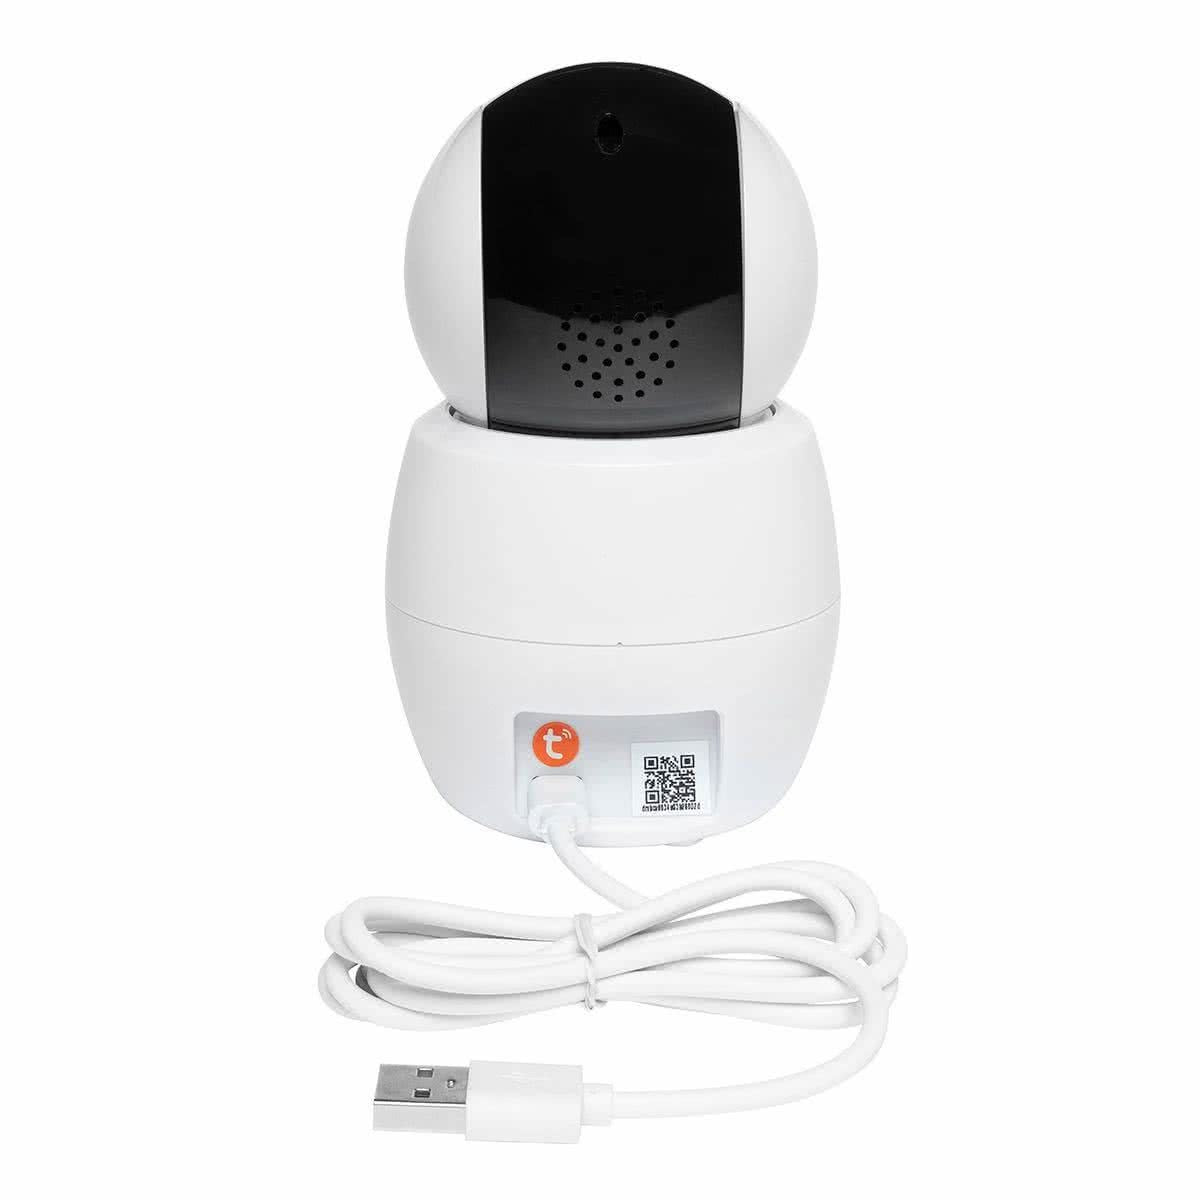 Smart Swift 1080p Hd Baby Monitoring Camera